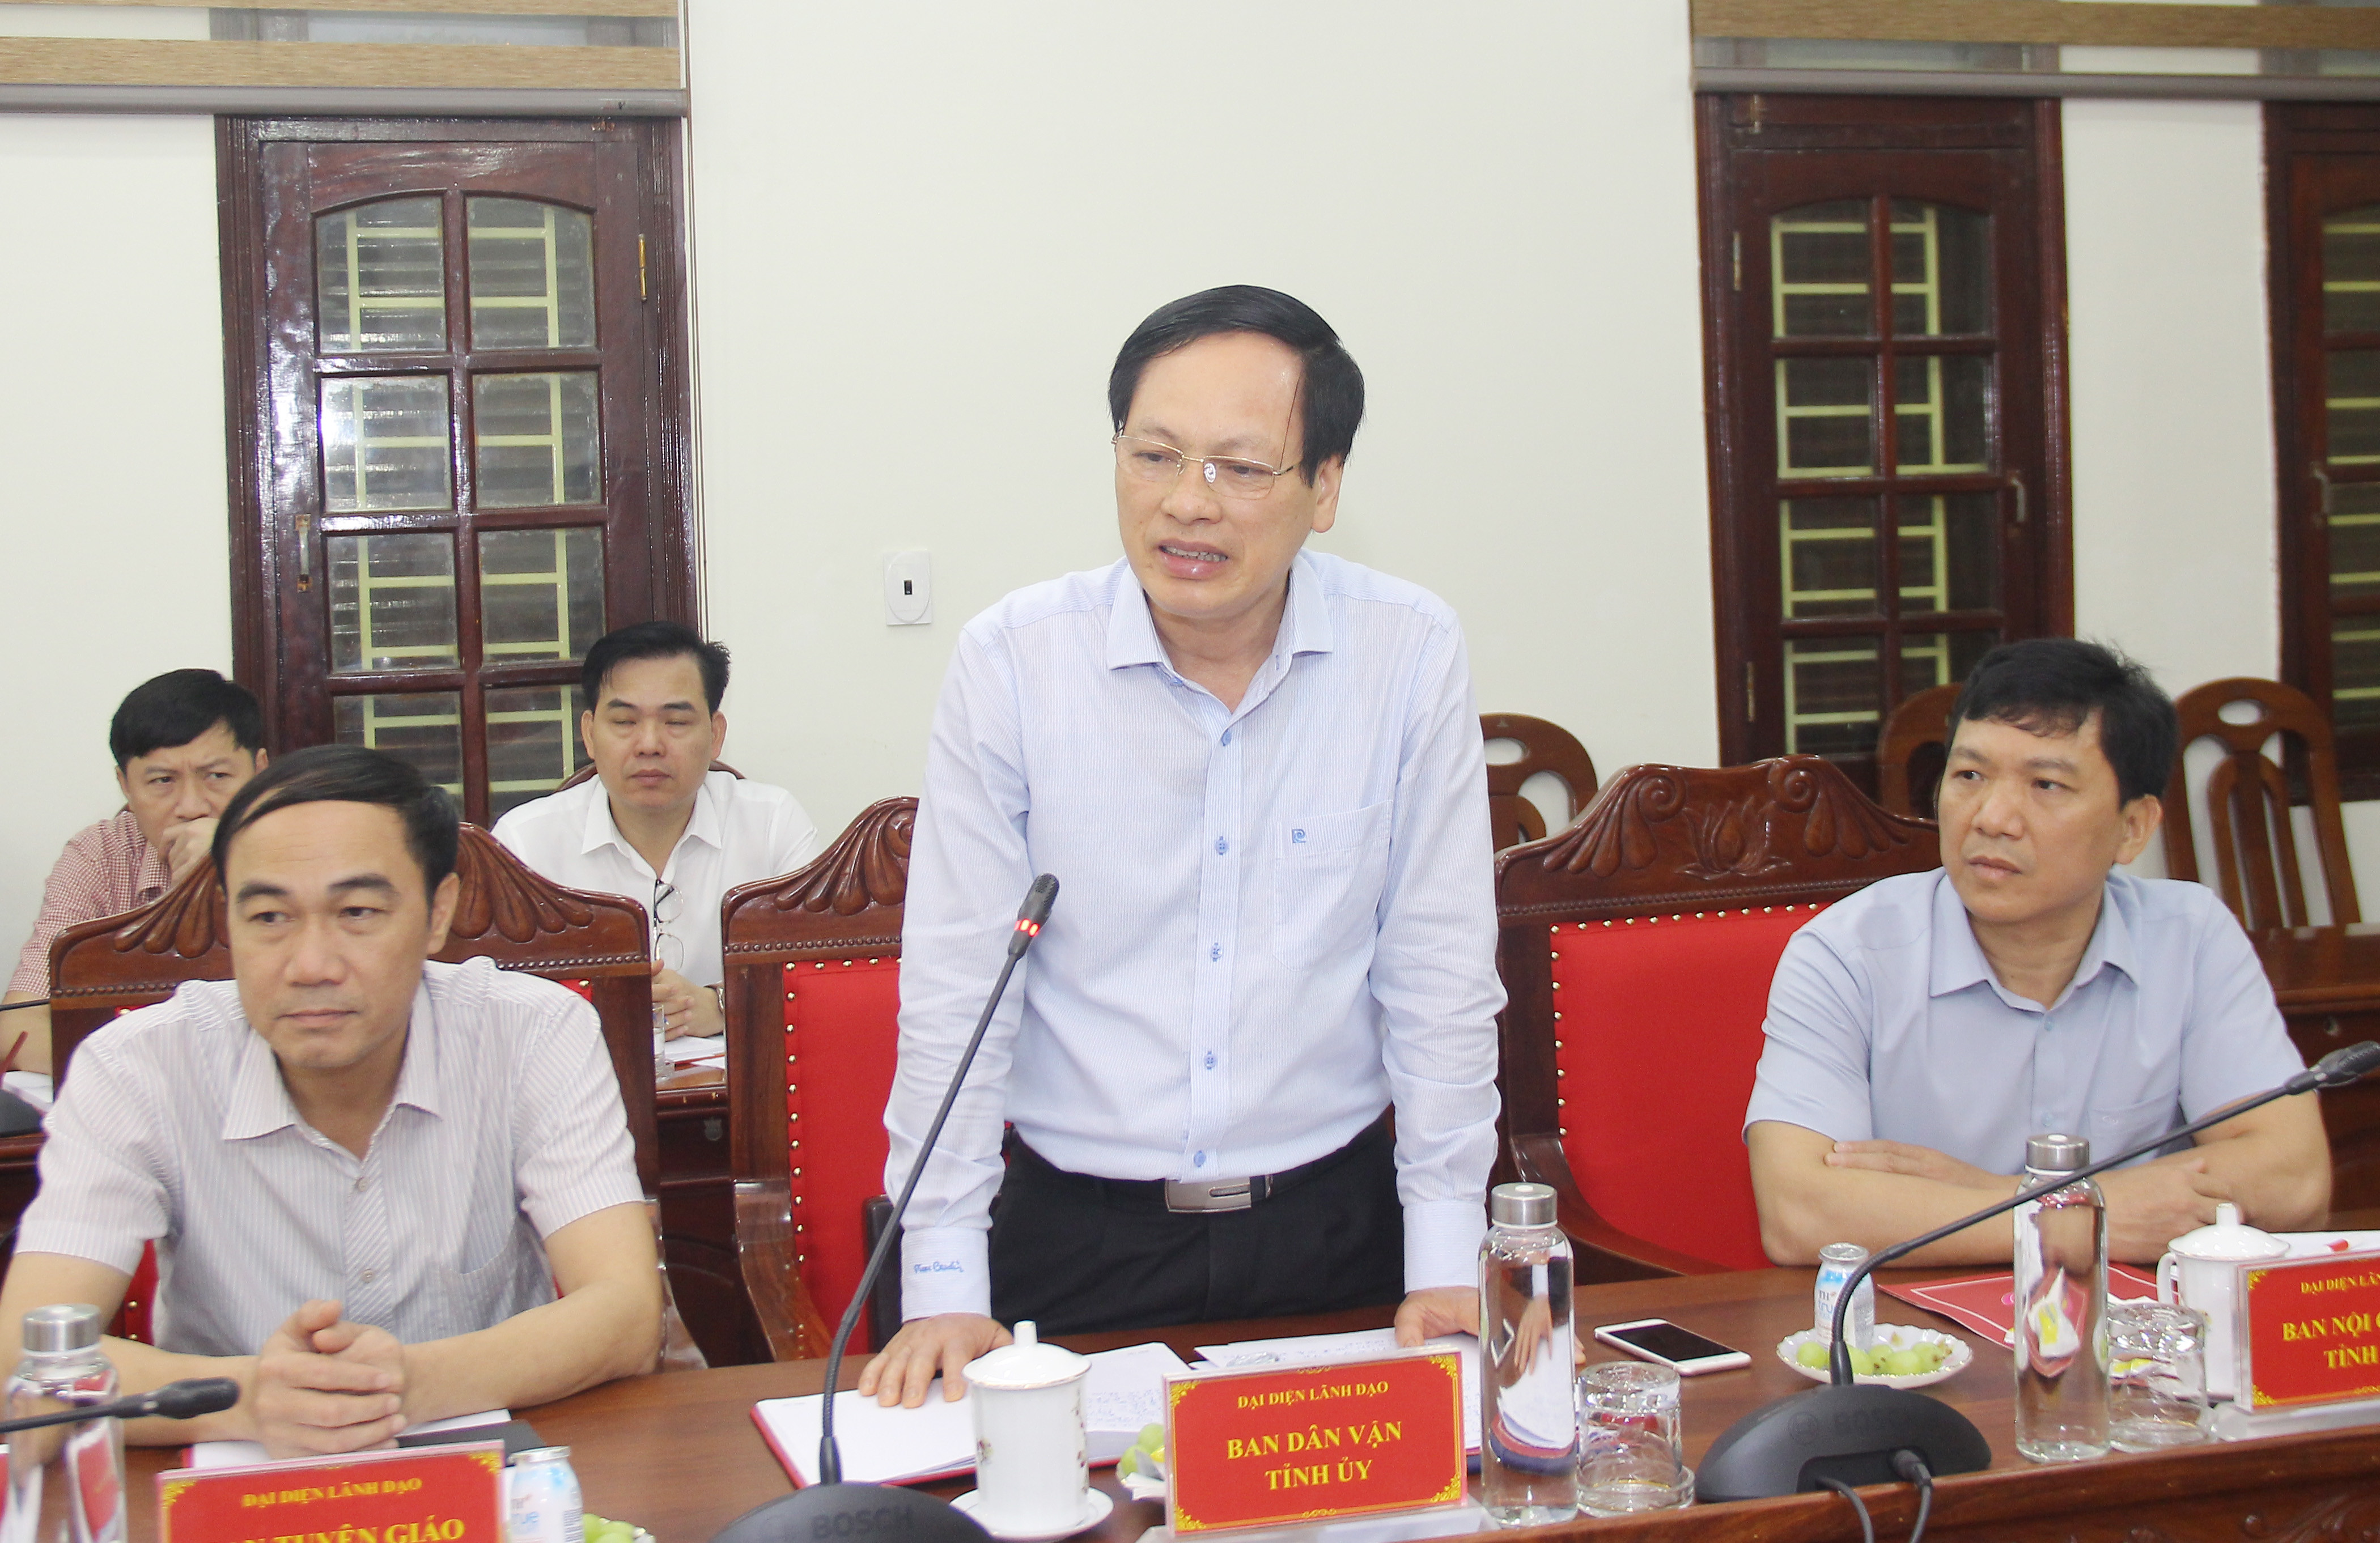 Đồng chí Nguyễn Mạnh Khôi - Phó trưởng ban Thường trực Ban Dân vận Tỉnh ủy nêu một số bất cập trong quá trình thực hiện mô hình văn phòng cấp ủy dùng chung. Ảnh: Mai Hoa